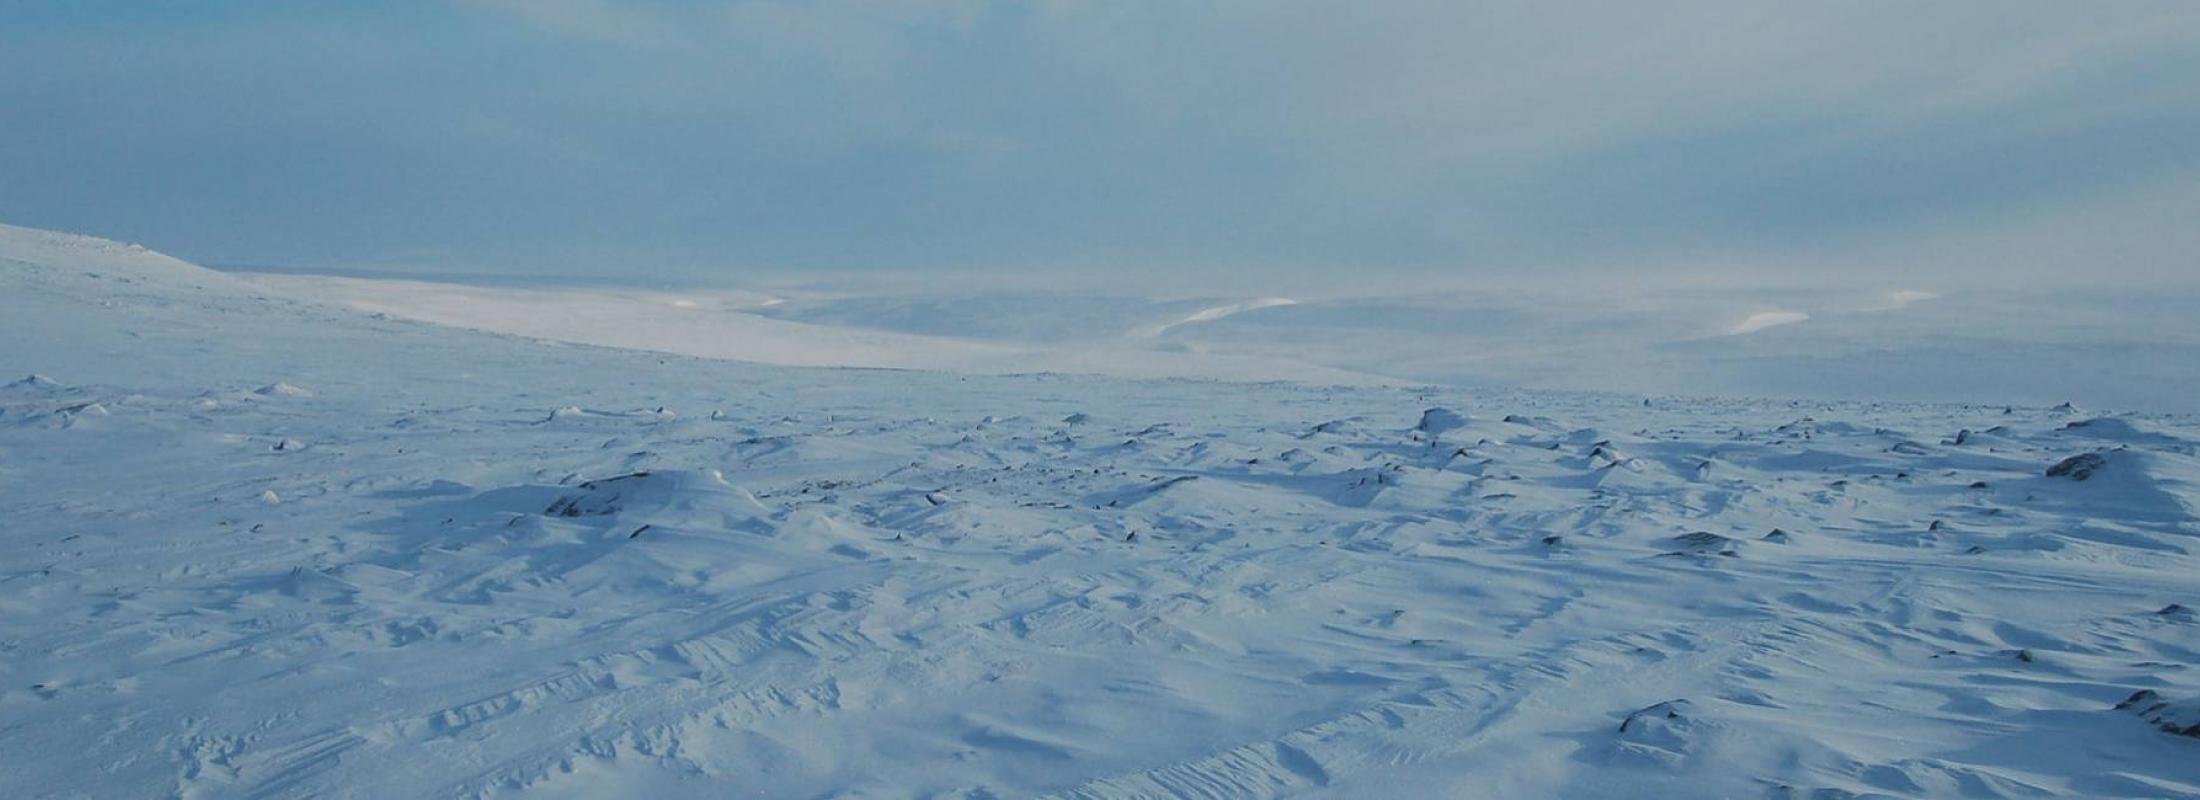 arctic landscape